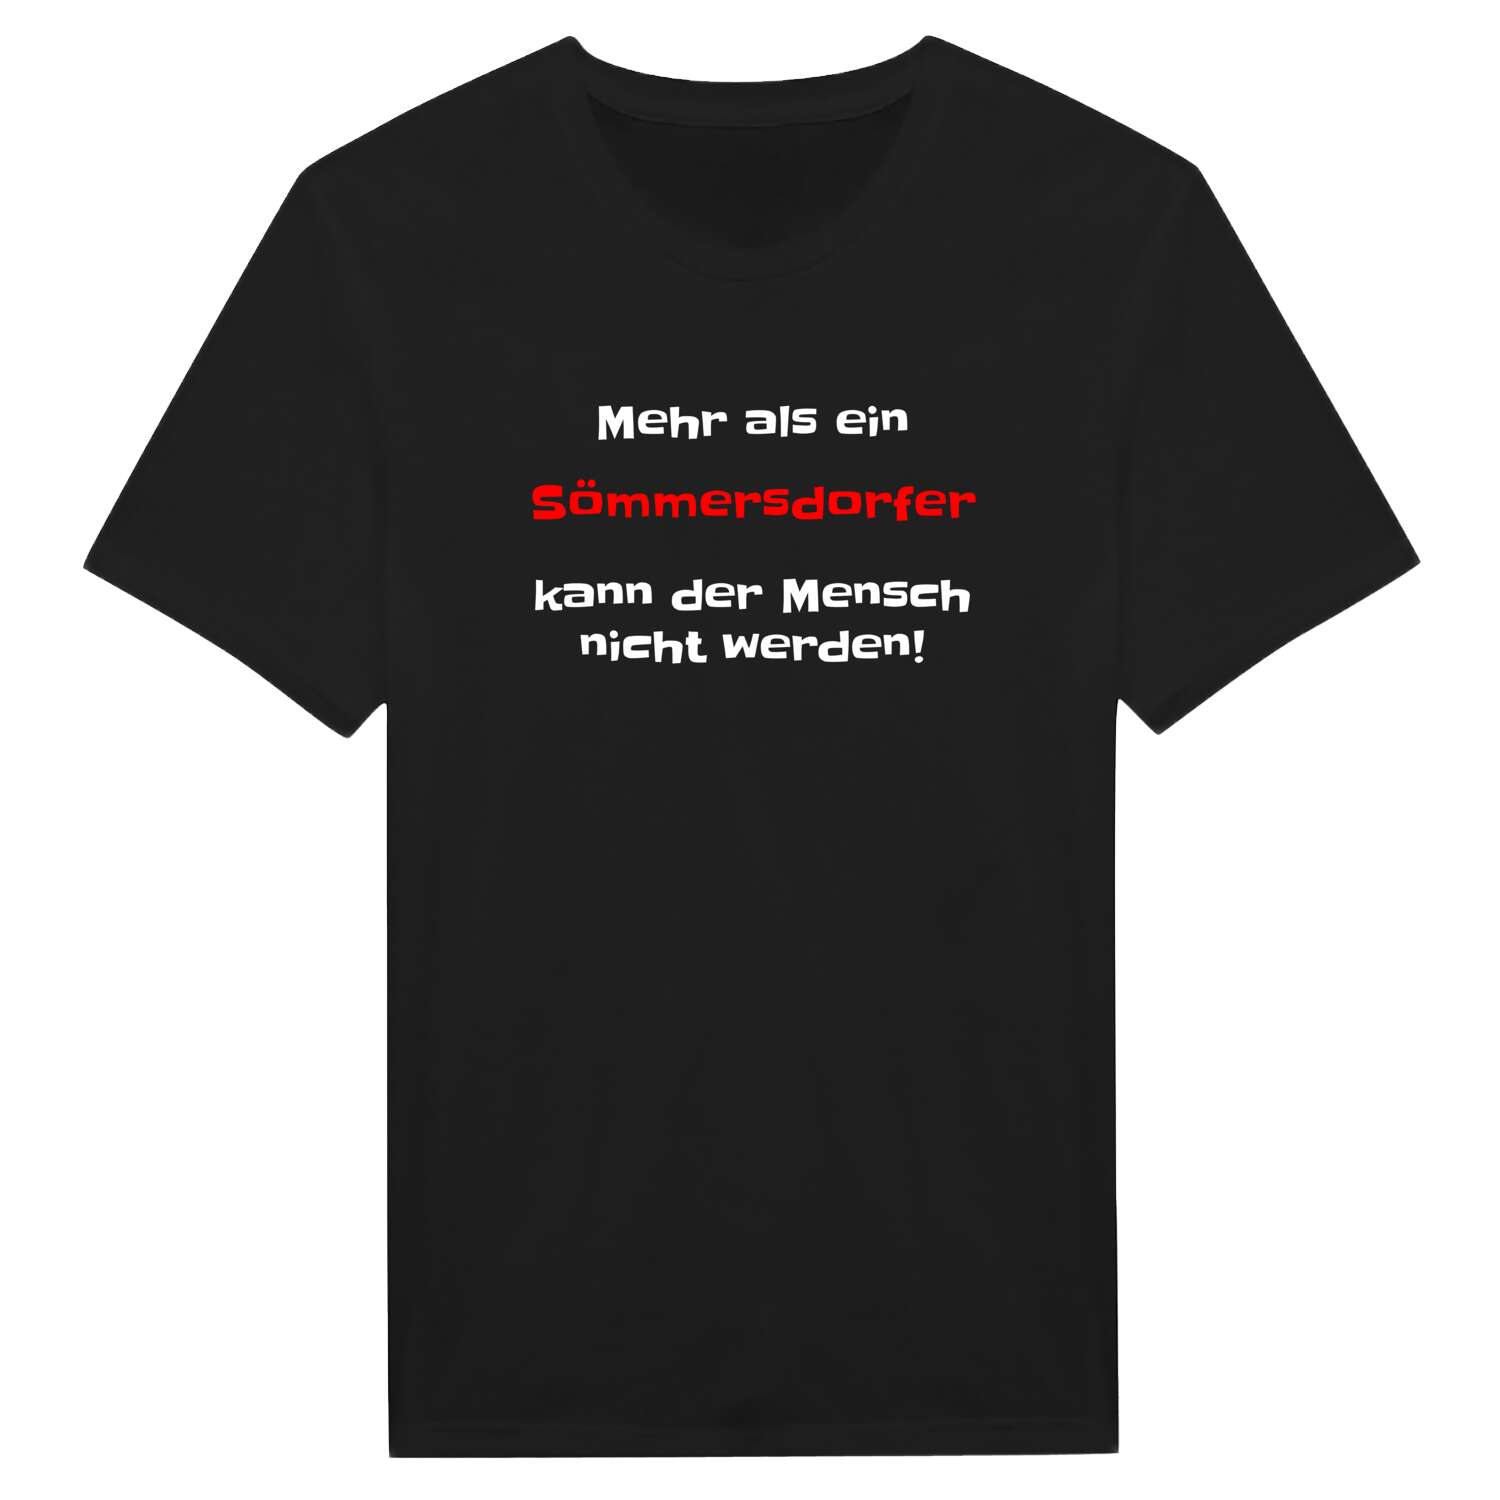 Sömmersdorf T-Shirt »Mehr als ein«